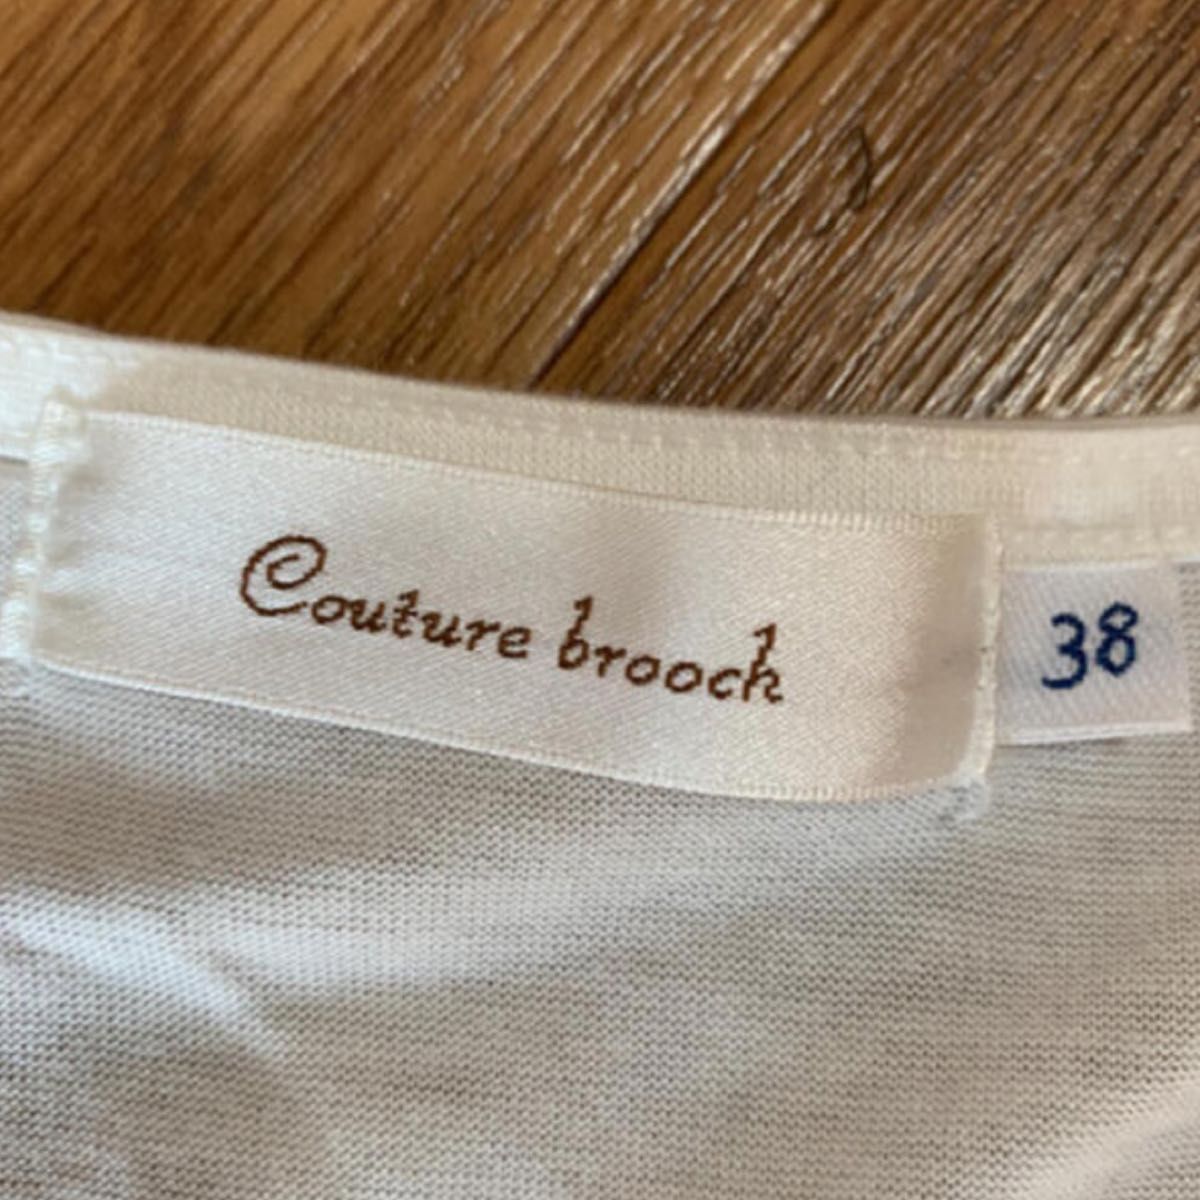 【値下げ】Couture brooch レーストップス カットソー 半袖トップス